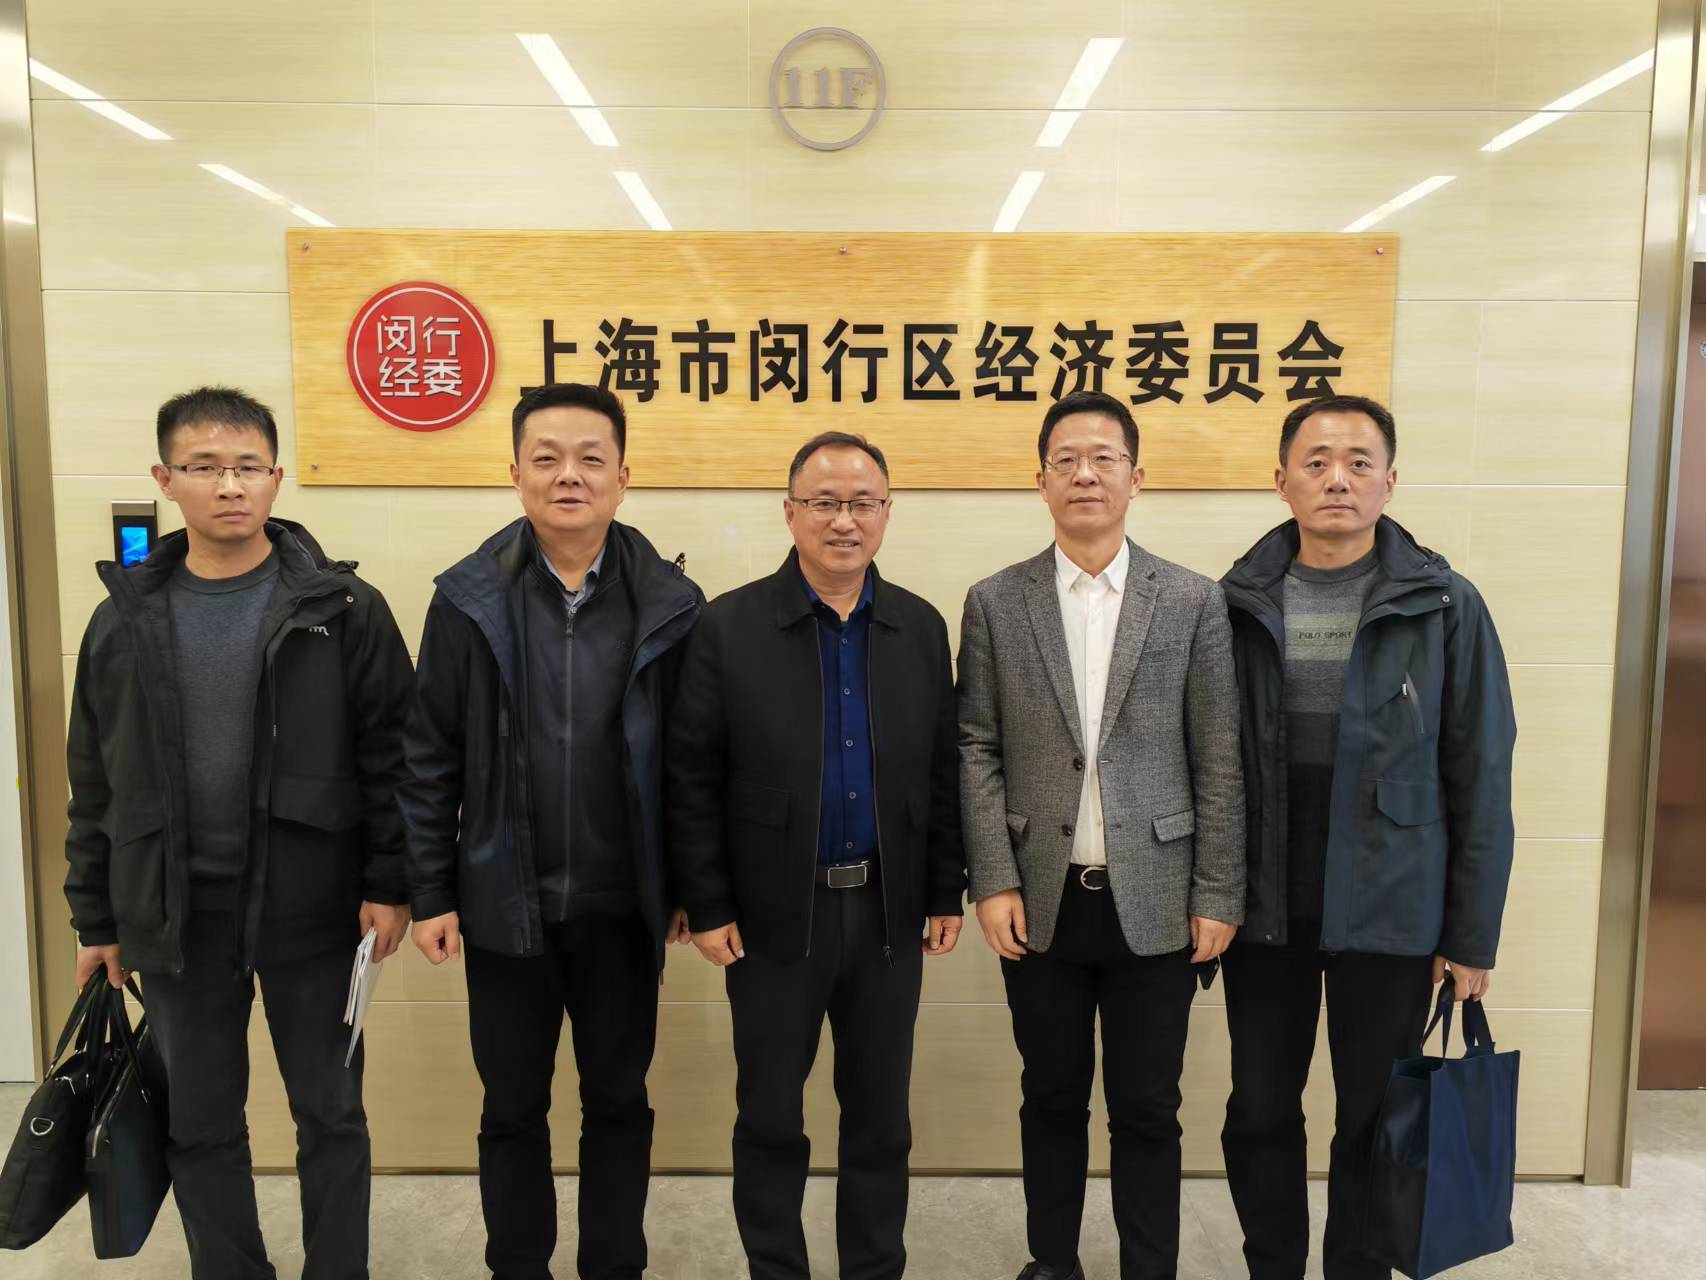 市经信局赴上海市闵行区经济委员会开展结对共建活动